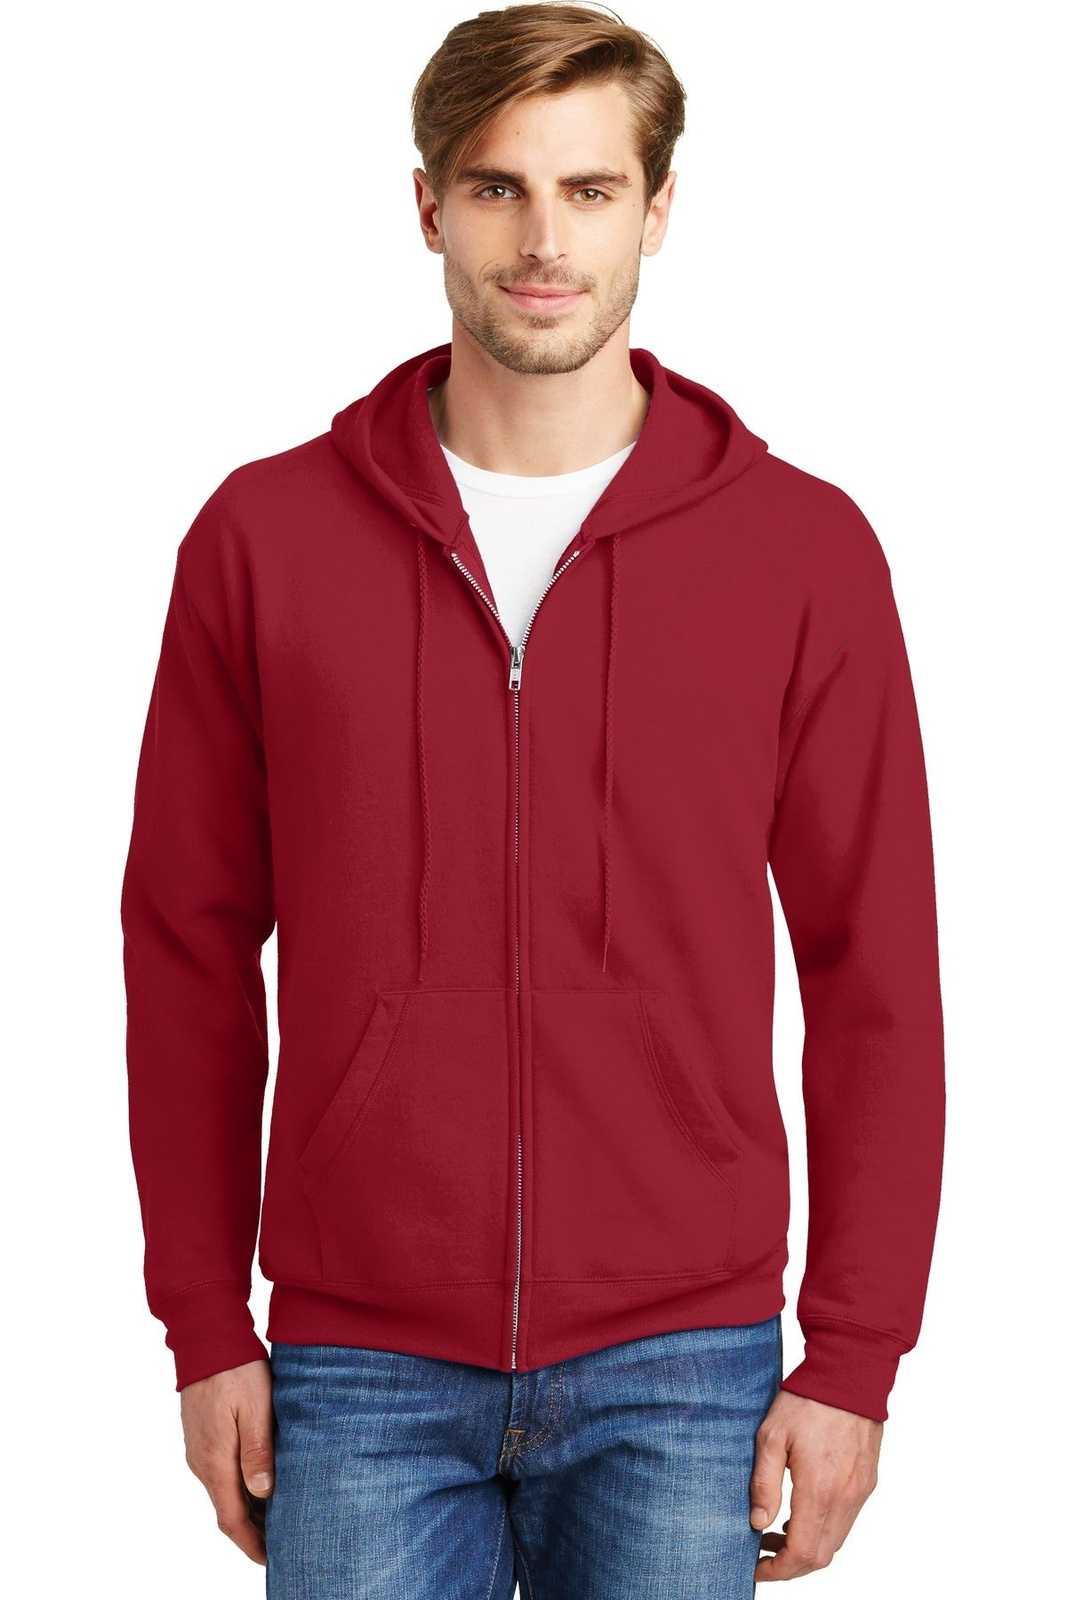 Hanes P180 Ecosmart Full-Zip Hooded Sweatshirt - Deep Red - HIT a Double